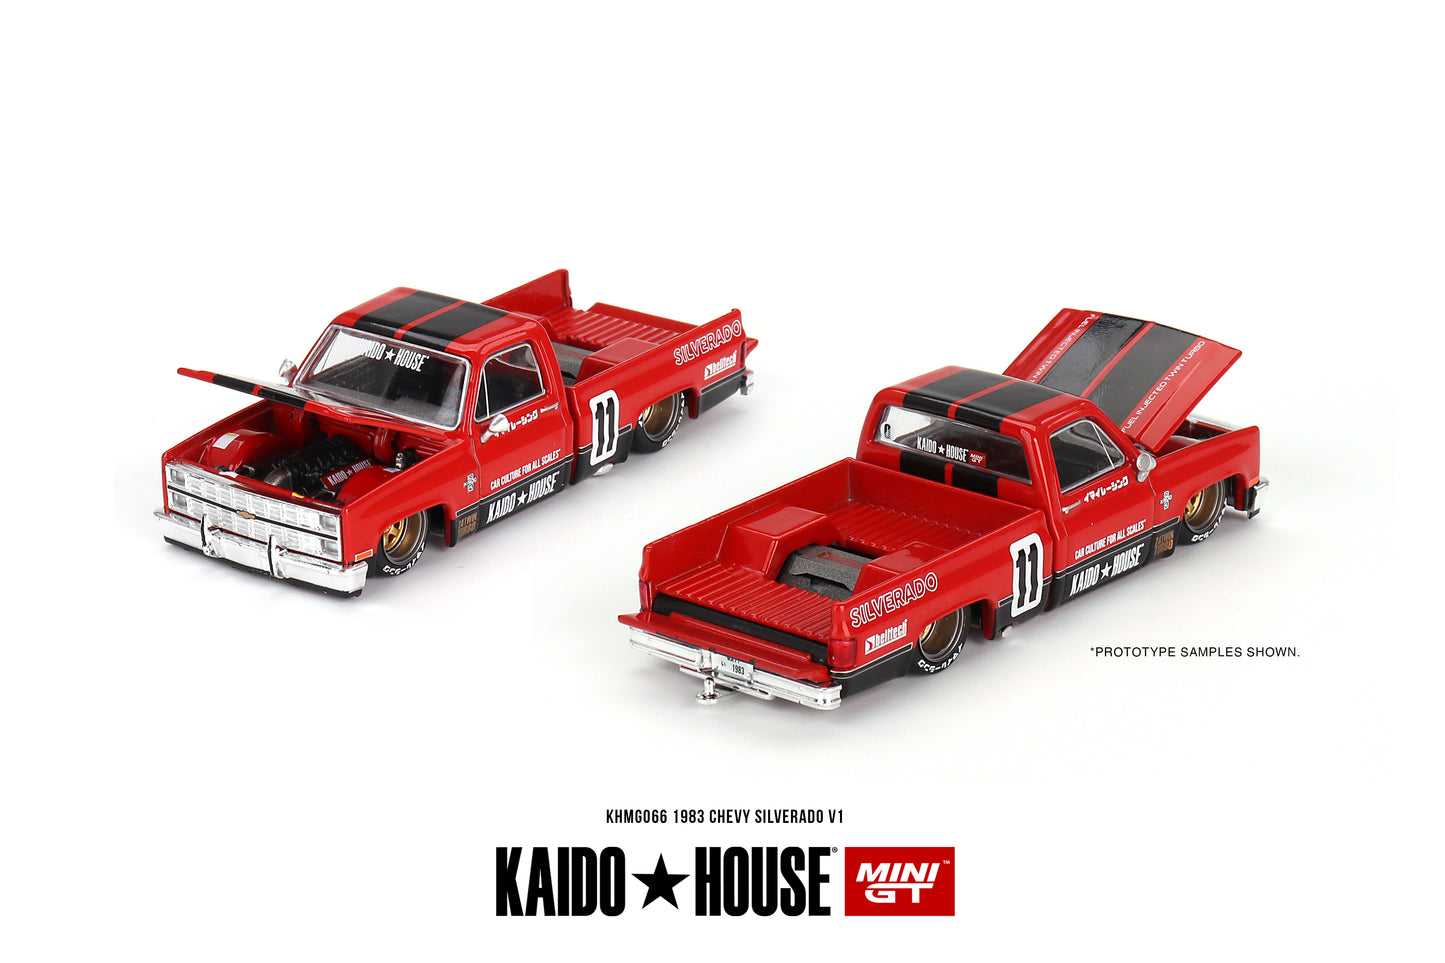 Mini GT Kaido House 066 Chevrolet Silverado Kaido V1 Red Black 1:64